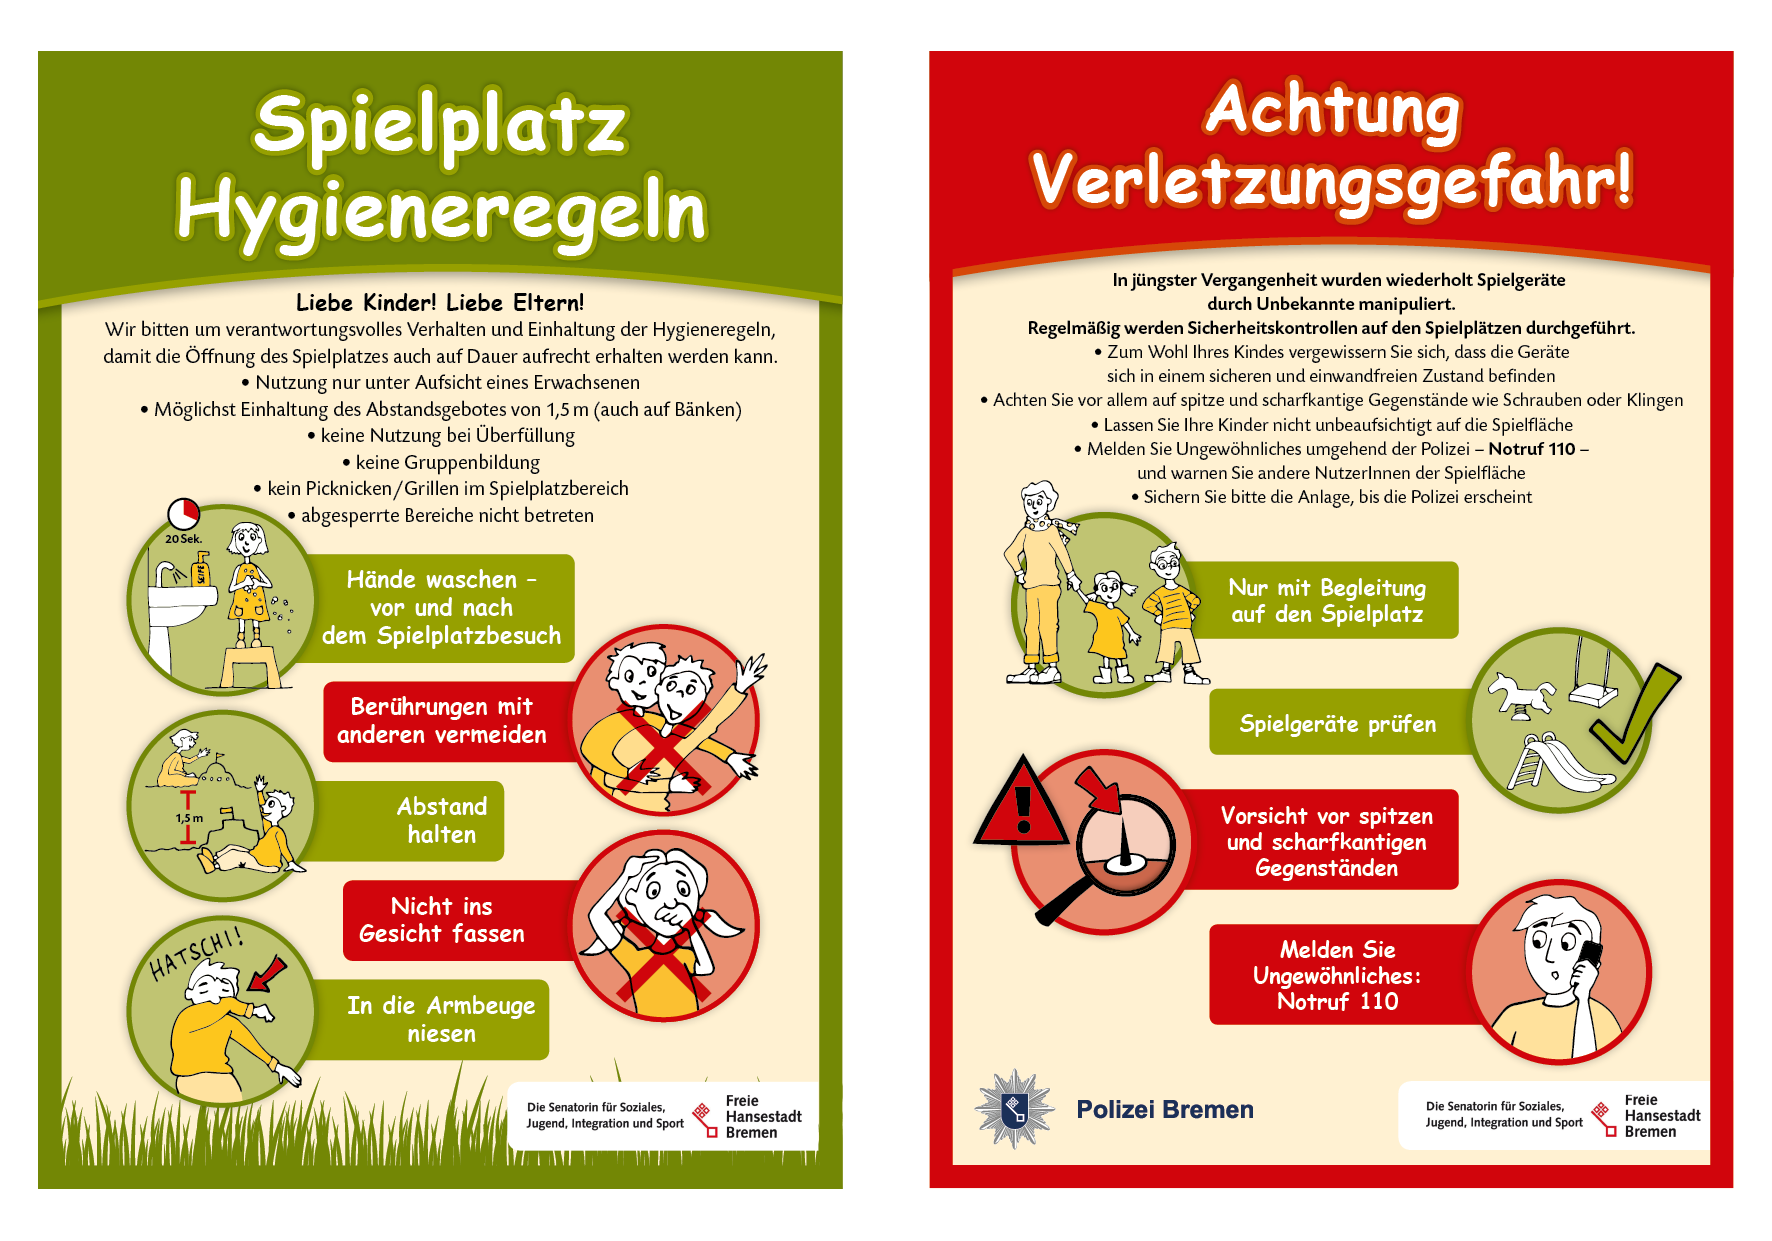 Illustrationen und Gestaltung von Informationsplakaten für die Freie Hansestadt Bremen / Polizei Bremen 